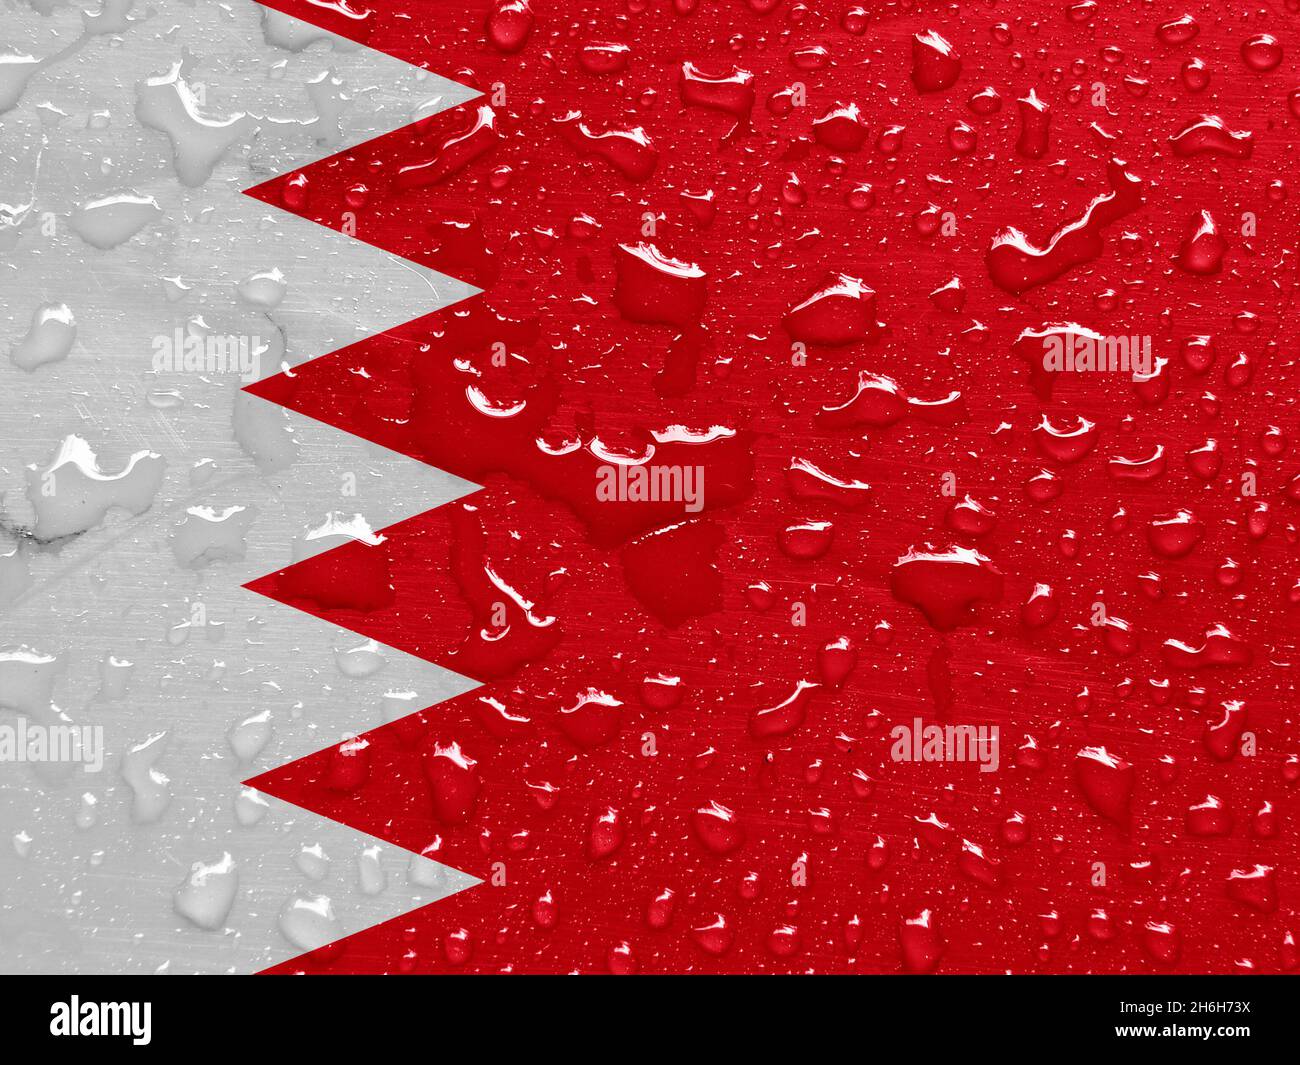 Drapeau de Bahreïn avec gouttes de pluie Banque D'Images